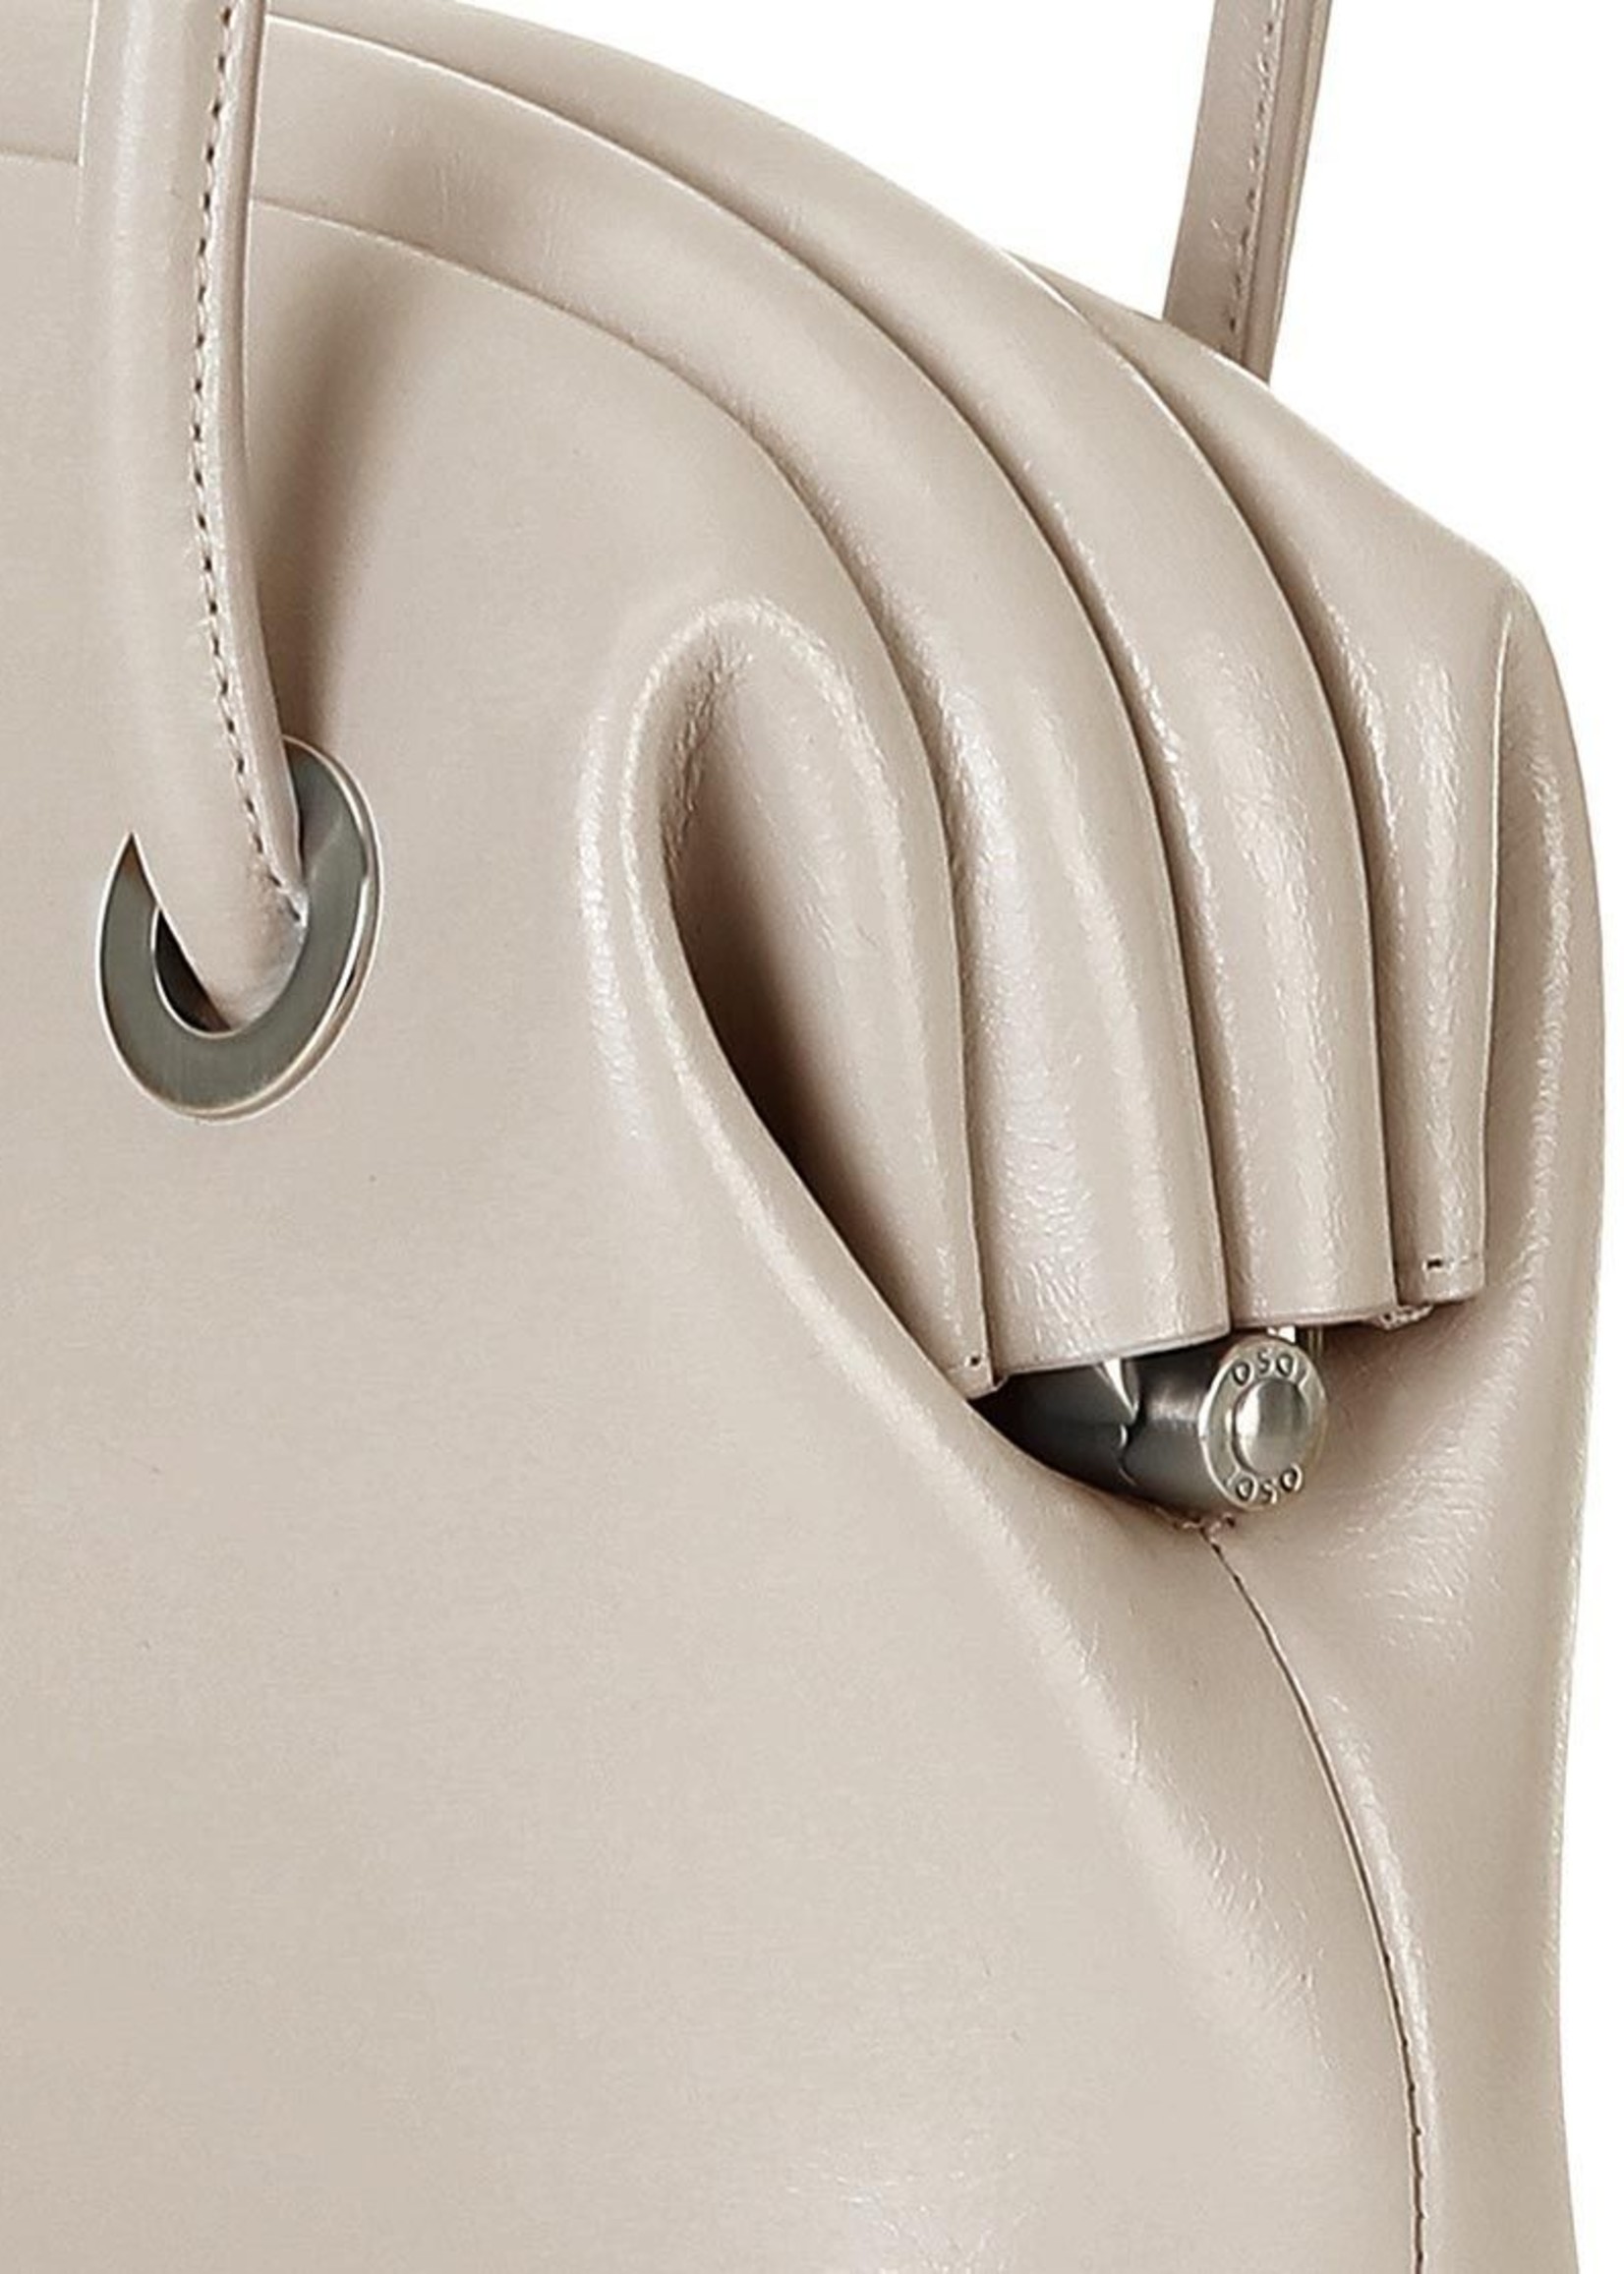 OSOI Circle Brot Bag in Warm Grey Leather